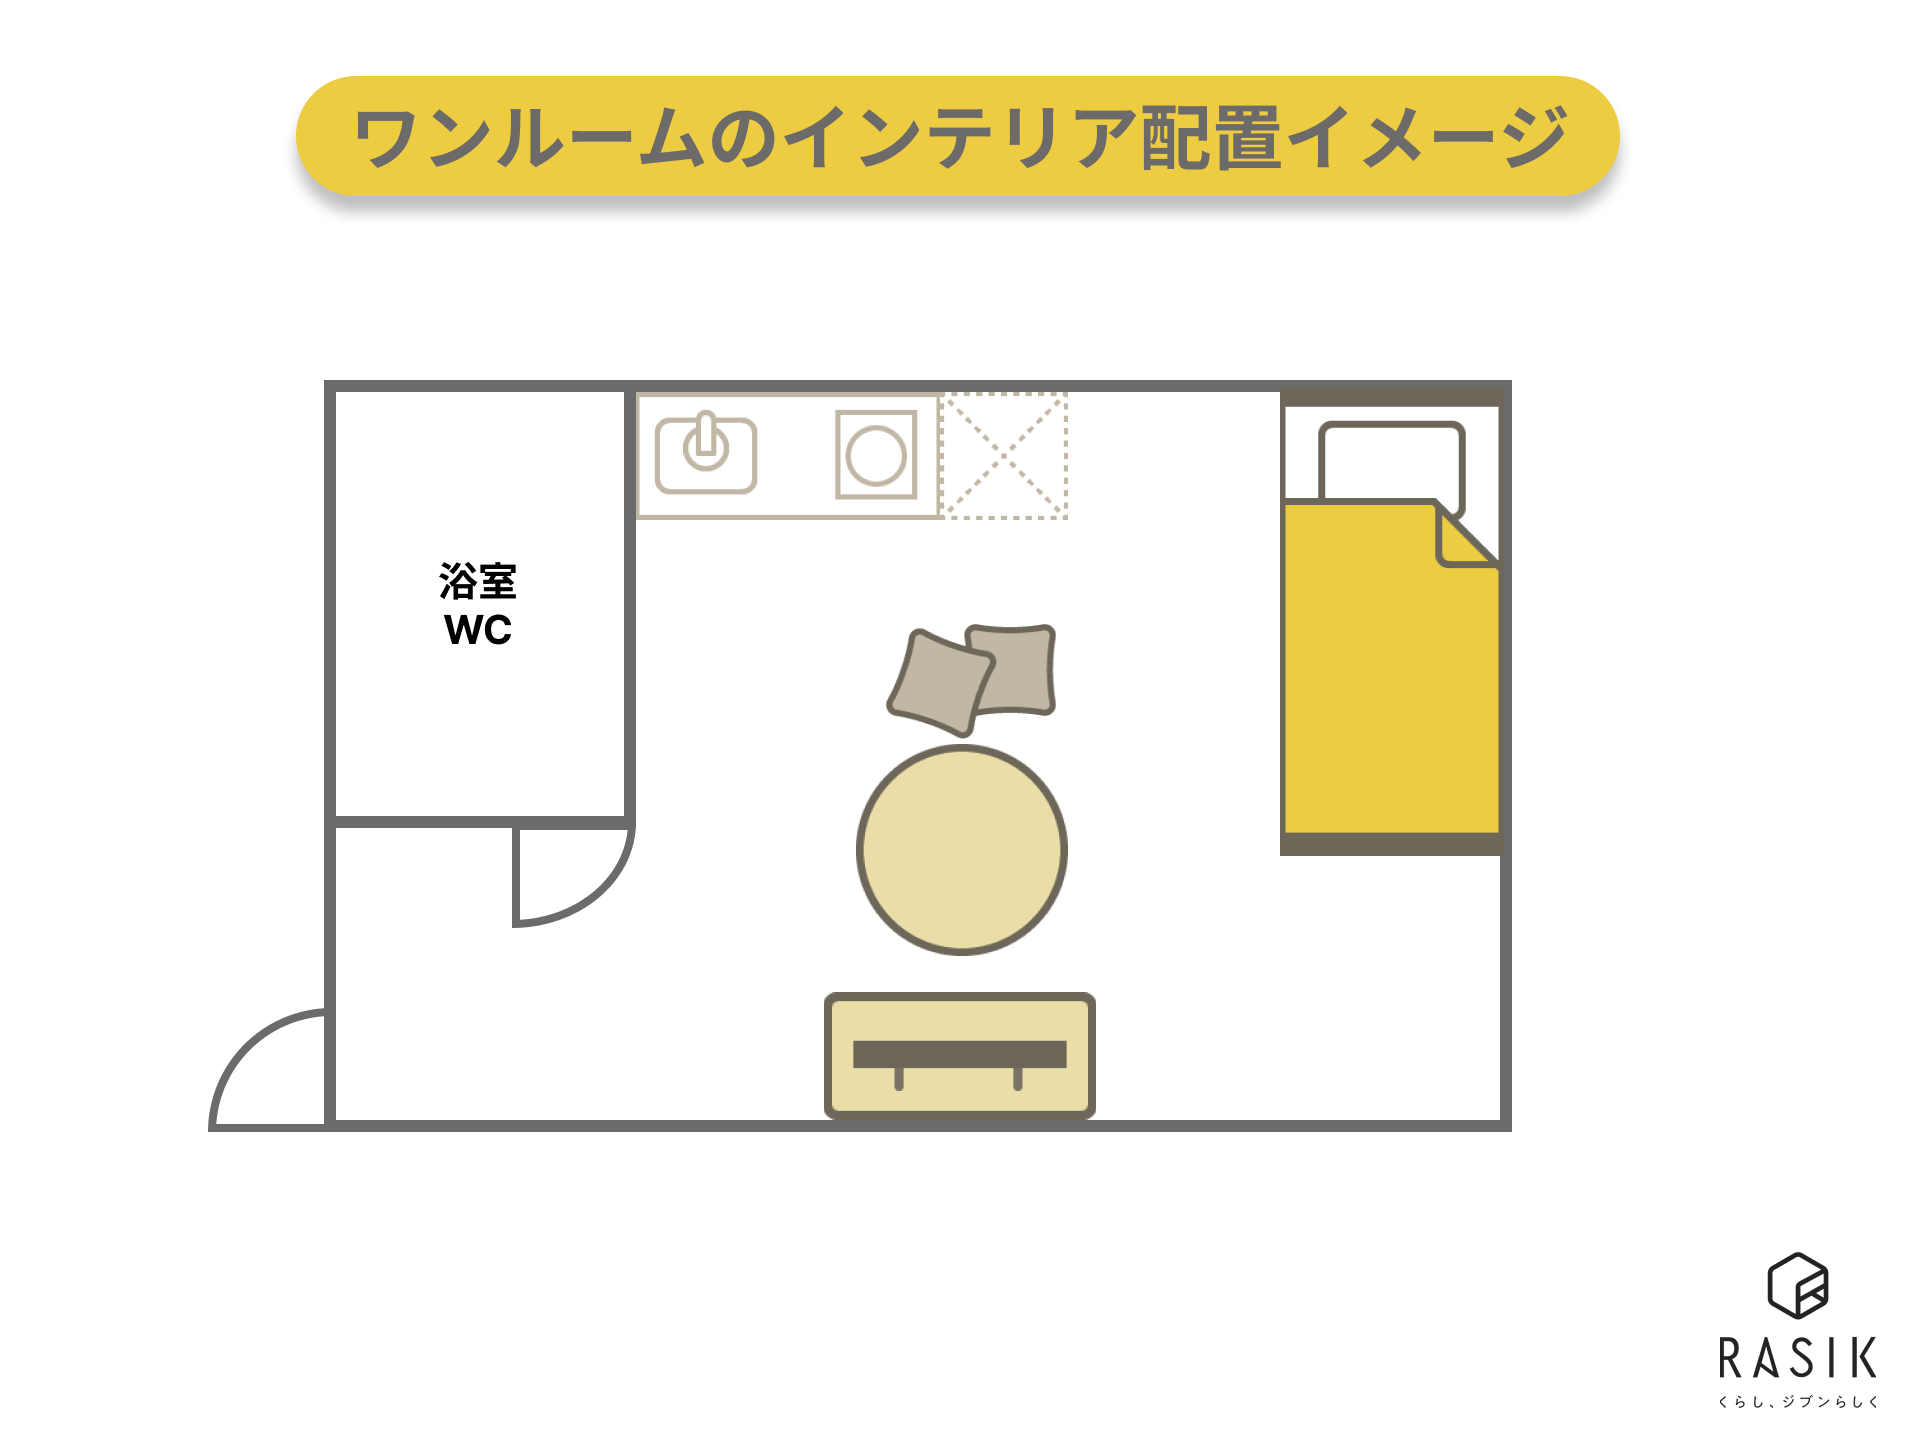 キッチンと居室が繋がっているワンルームの例